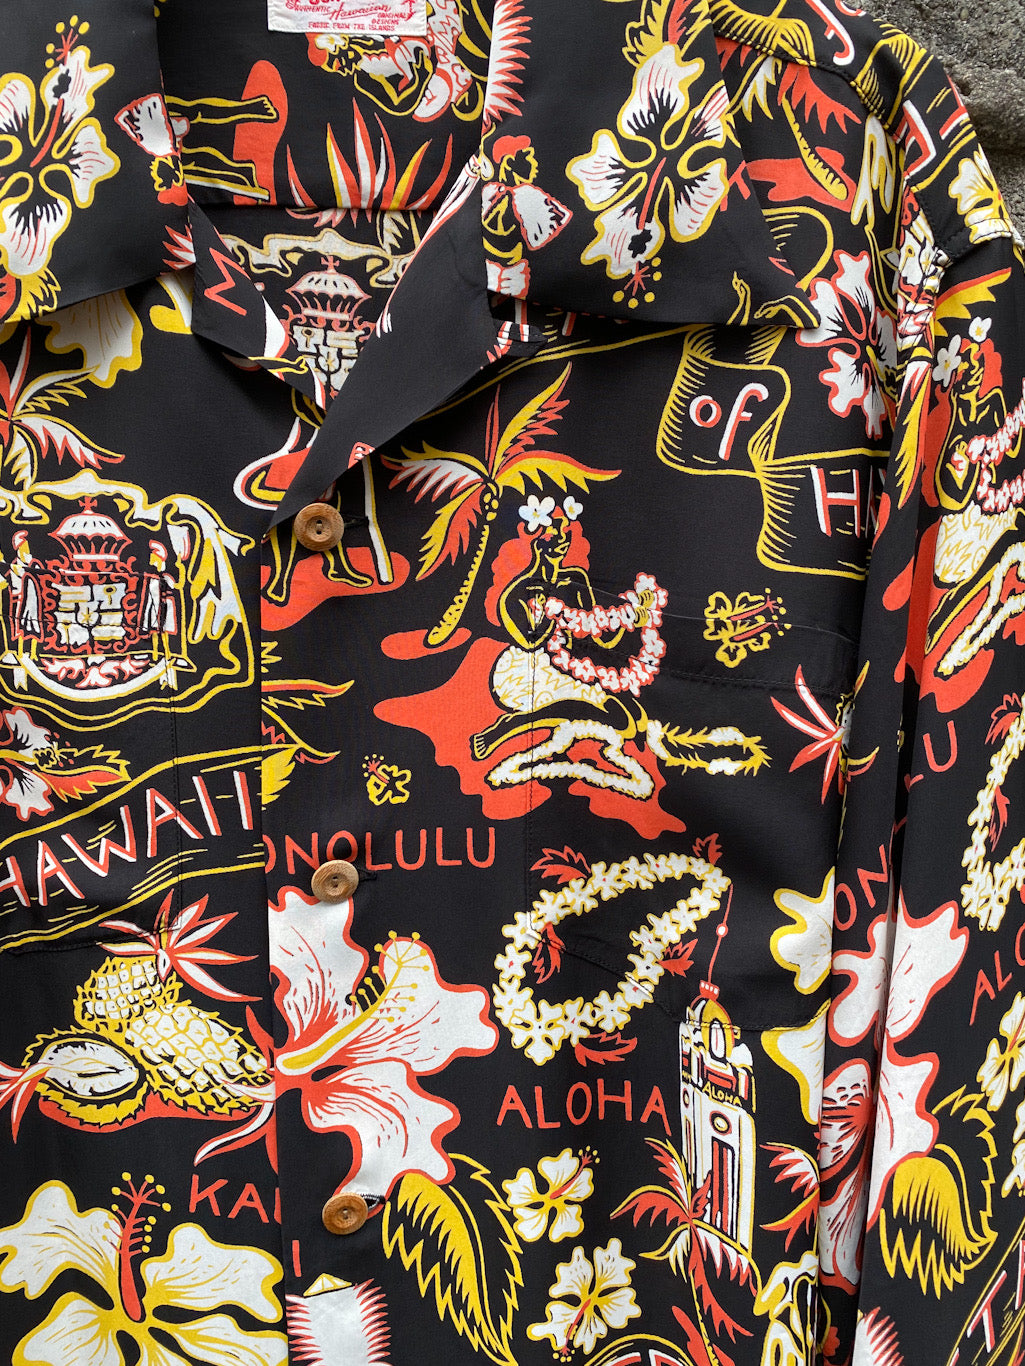 Rayon Hawaiian Shirt “STATE OF HAWAII”